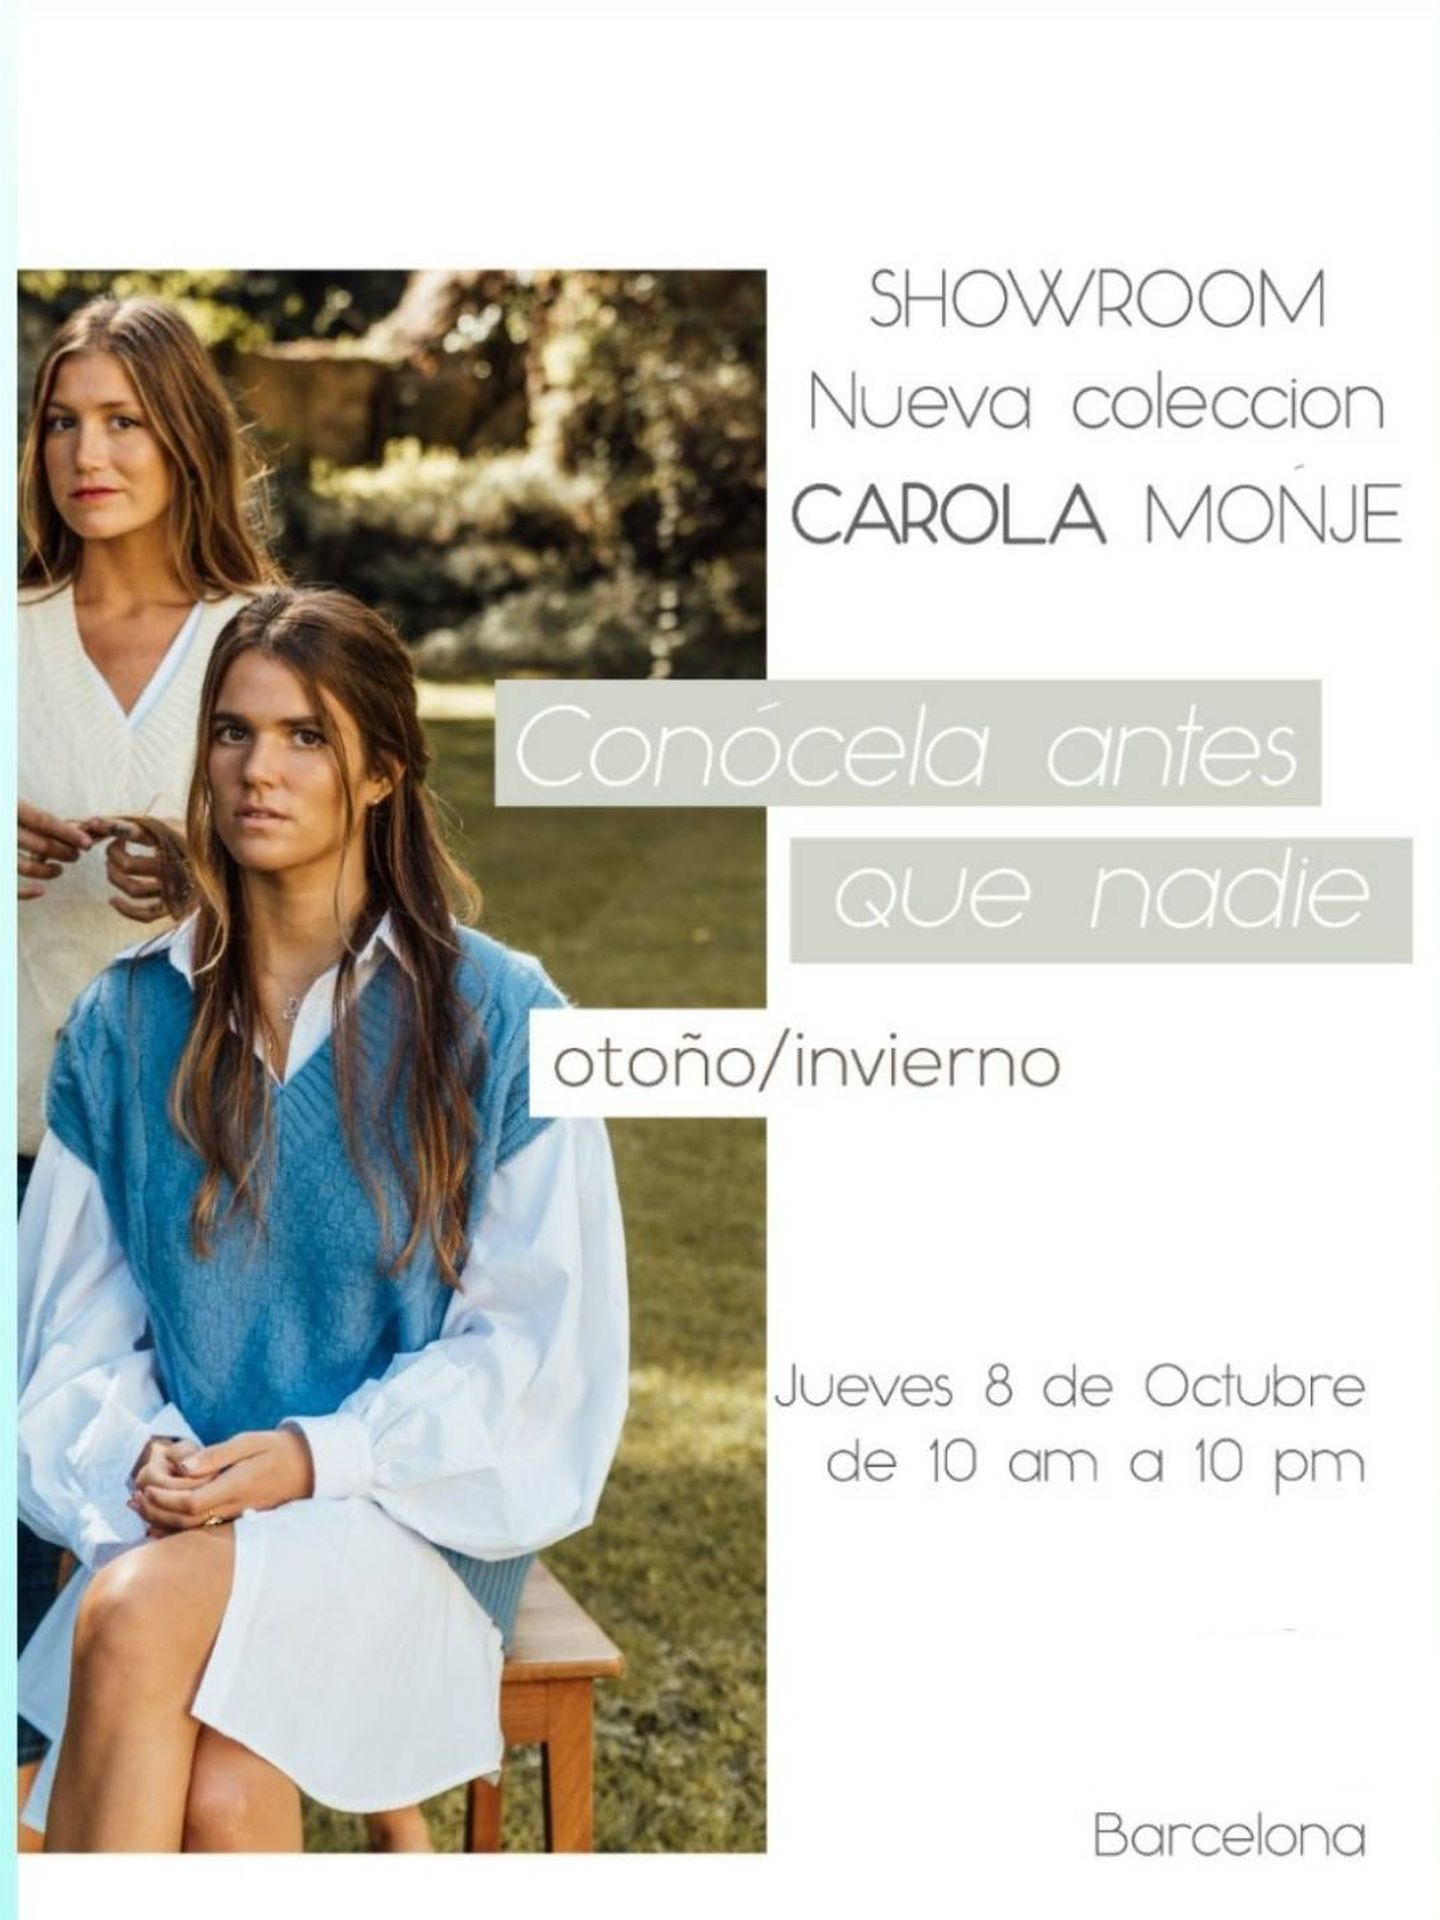 Anuncio del showroom de la colección de Carolina Monje. (IG)